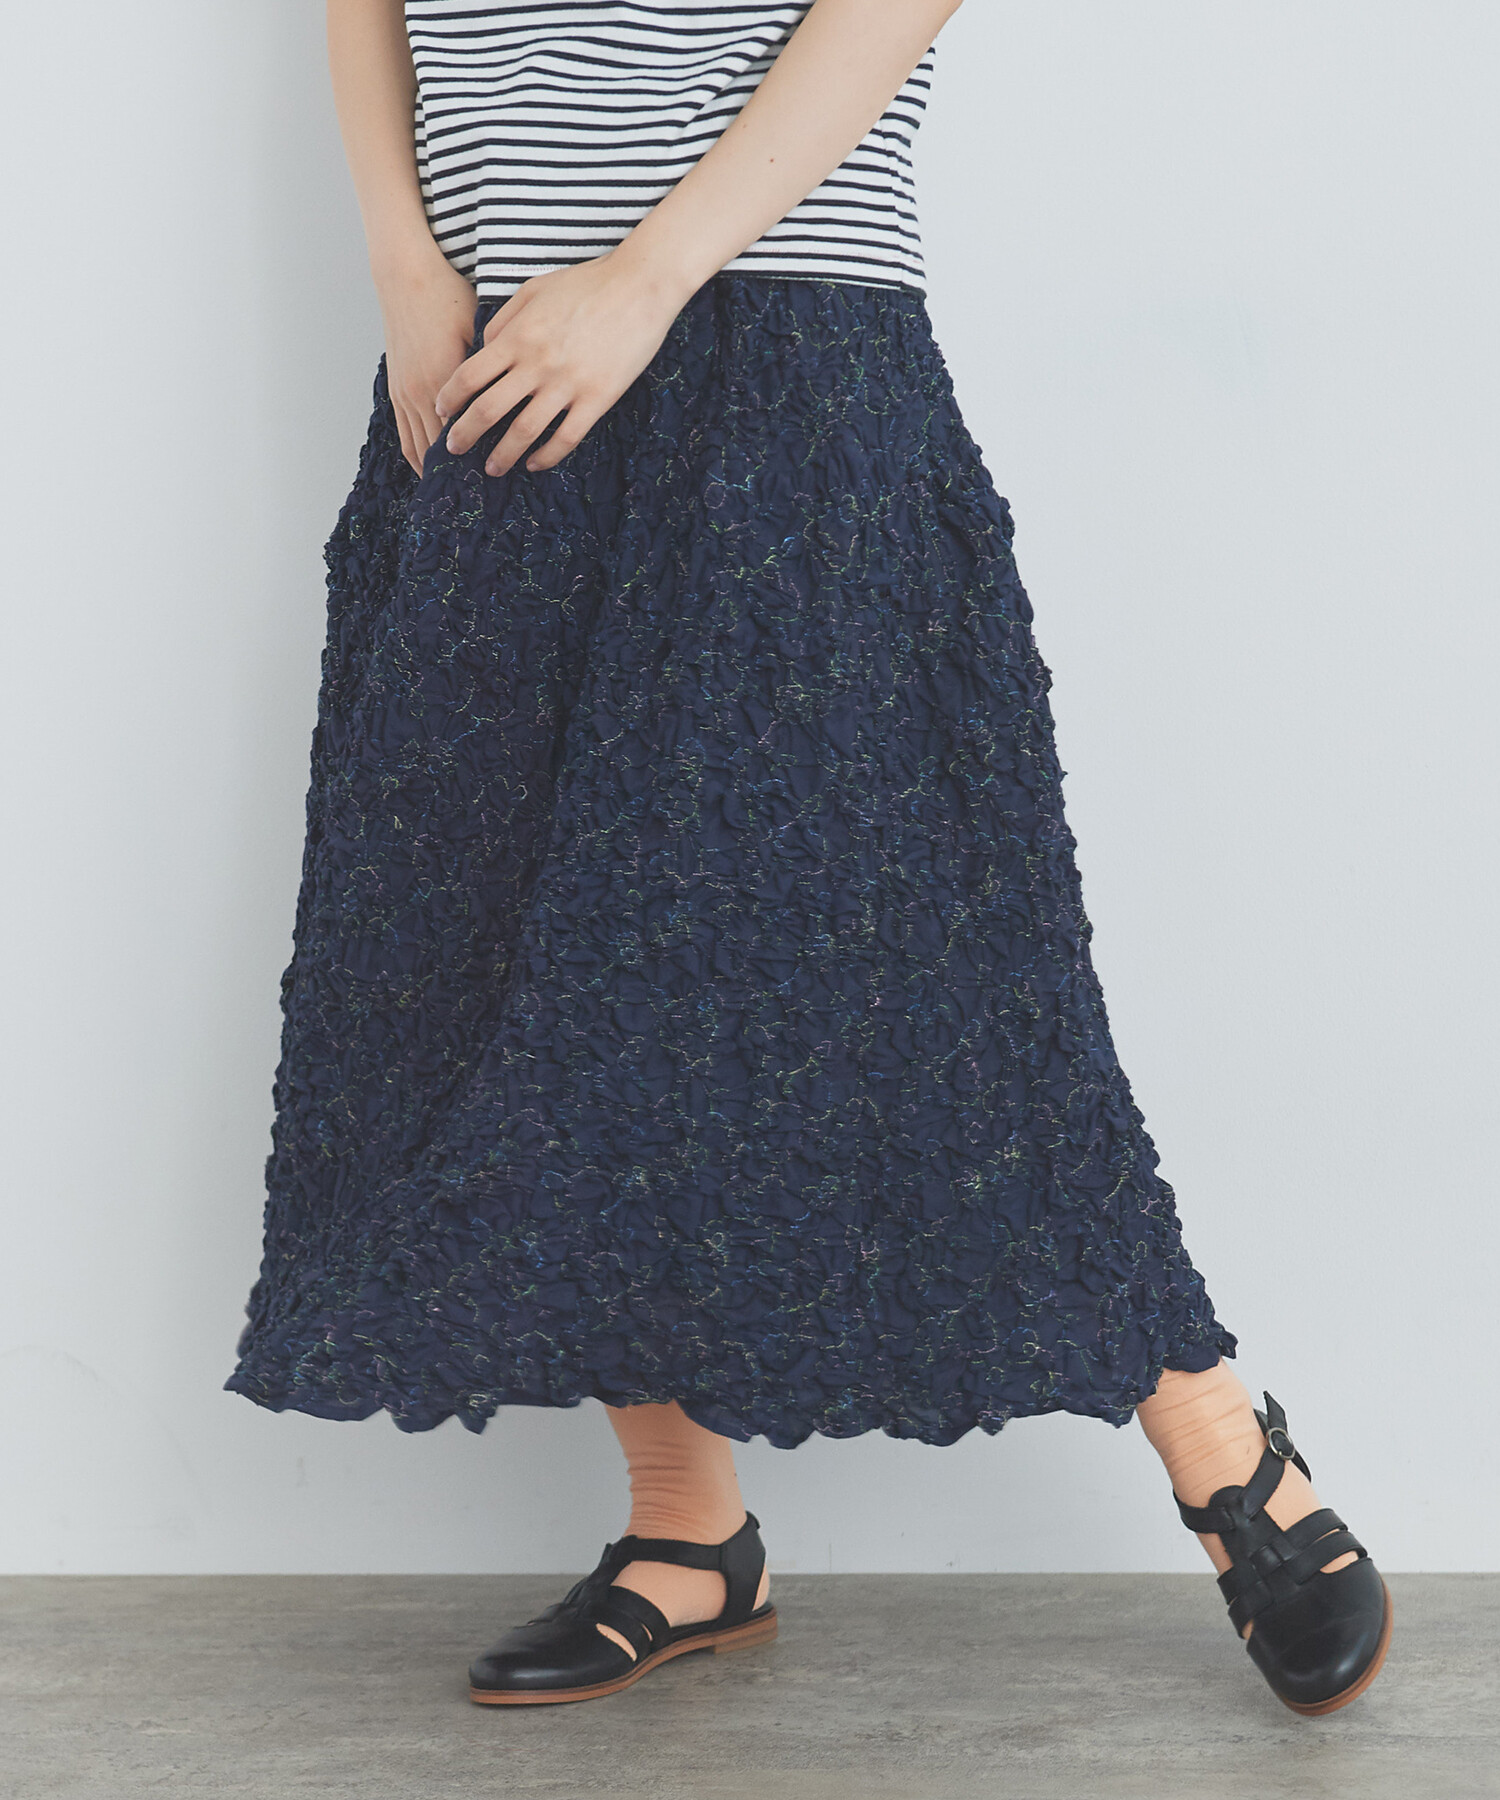 AMBIDEX Store 【予約販売】○くしゅくしゅはな刺繍 スカート(F シロ 